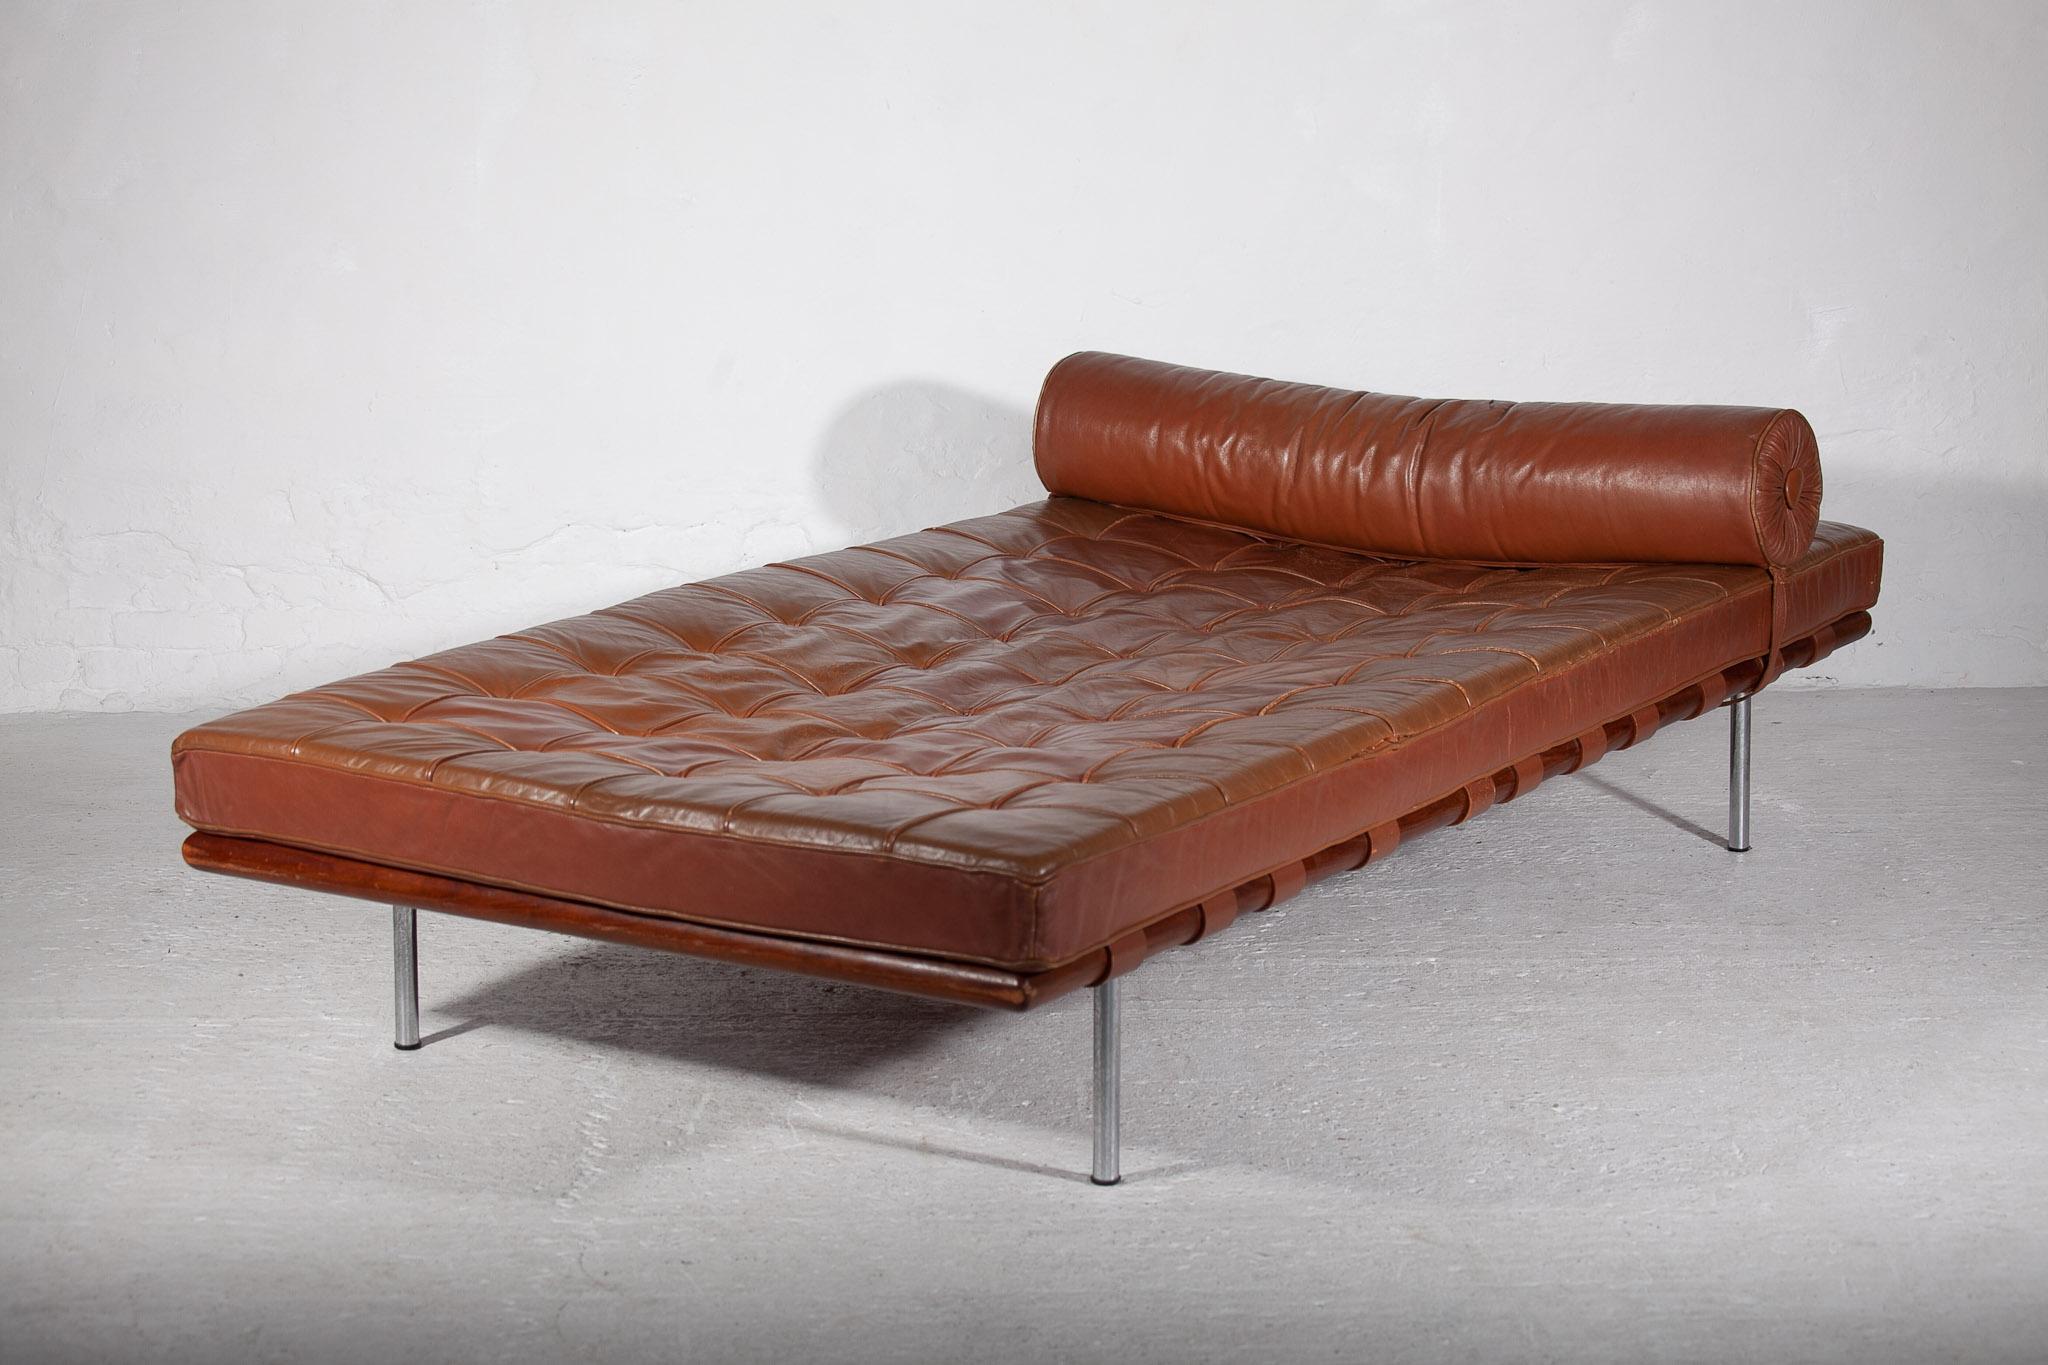 Iconique lit de jour original en patchwork de cuir marron conçu par Mies van der Rohe, produit par Knoll dans les années 1960. Belle patine et très bonne qualité du cuir du matelas conçu en combinaison avec un cadre en bois de teck et des pieds